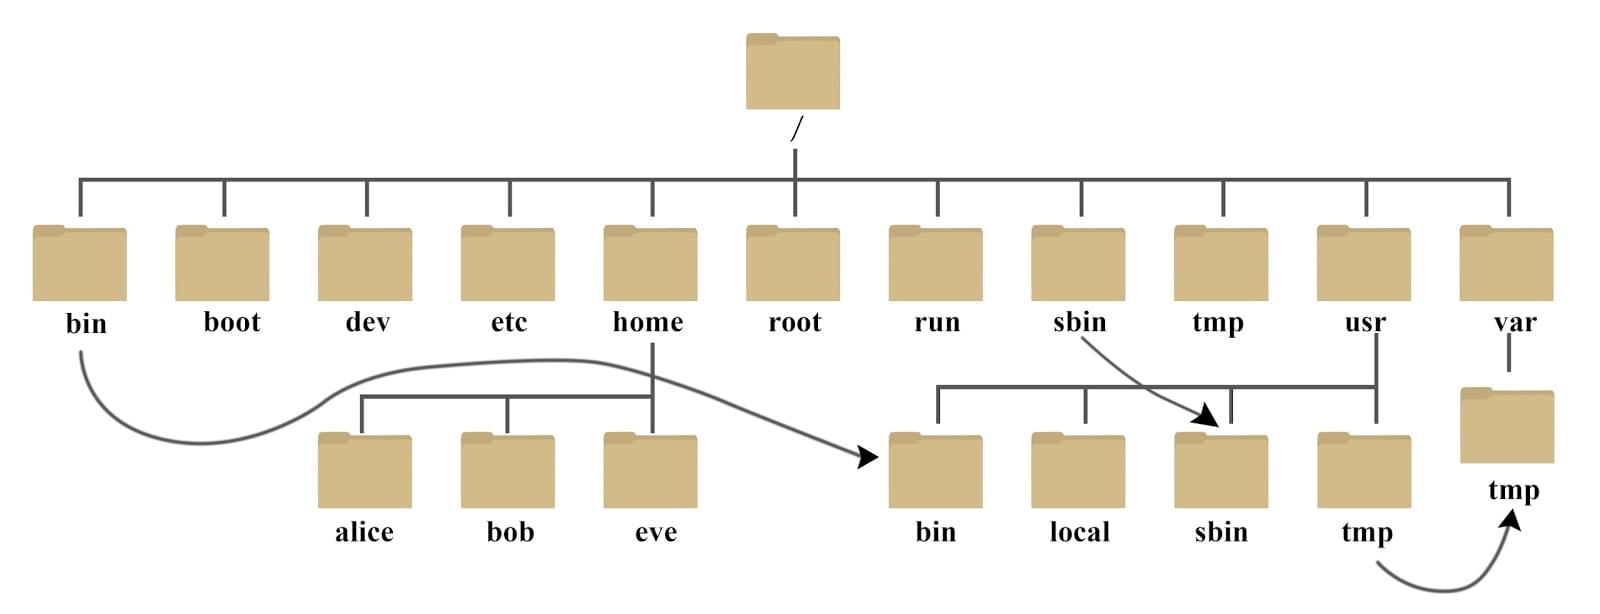 树形目录结构